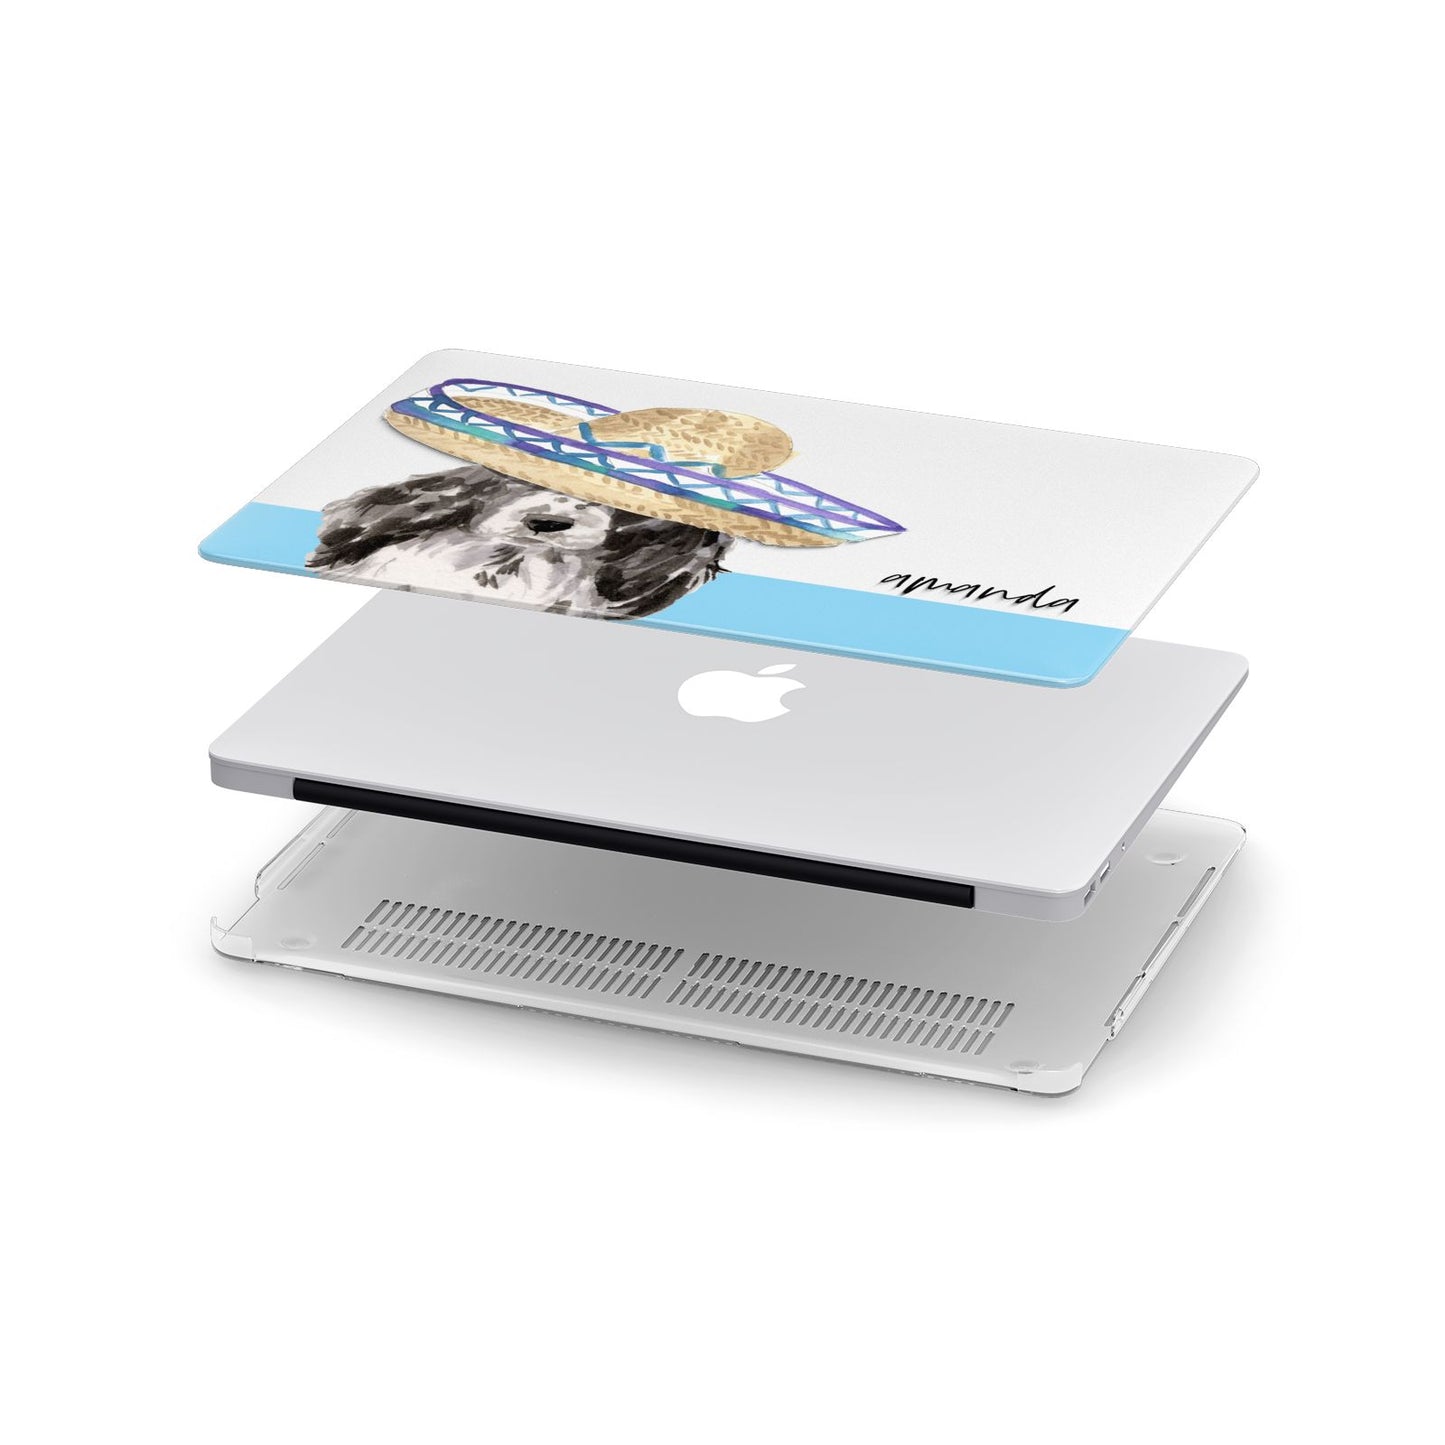 Personalised Cocker Spaniel Apple MacBook Case in Detail